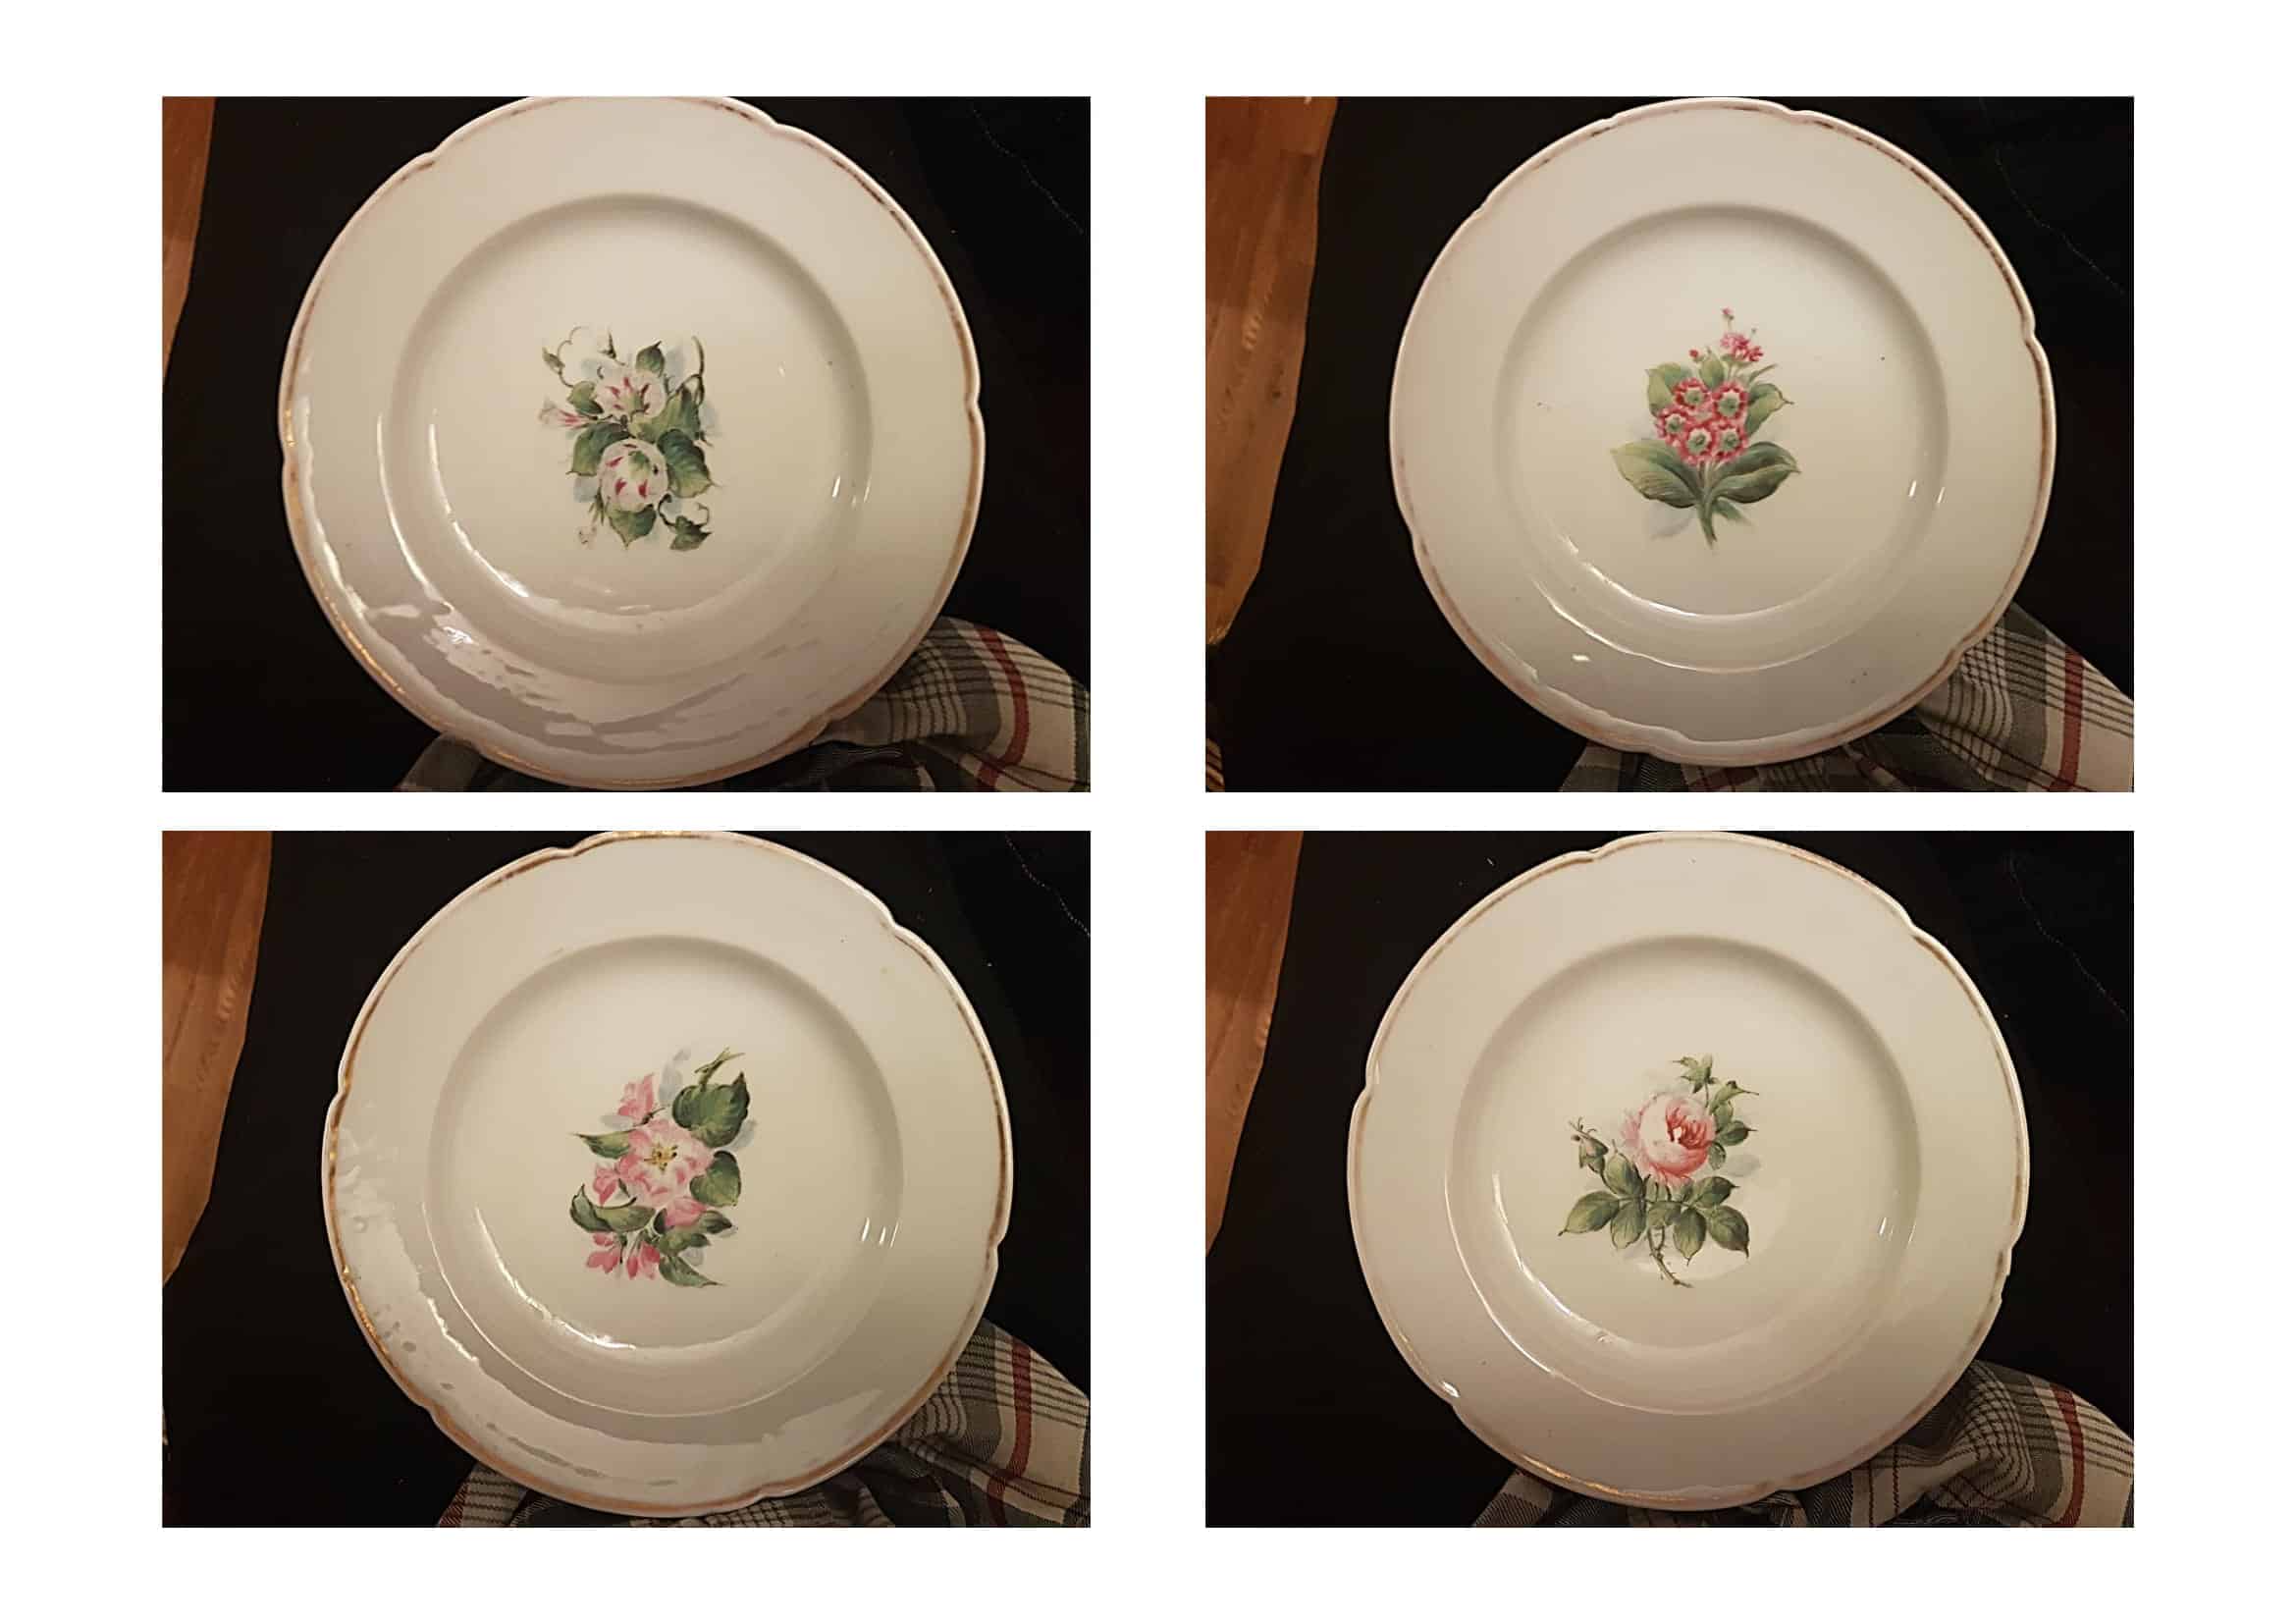 Assiette porcelaine danoise Bing & Grondahl vers 1860?